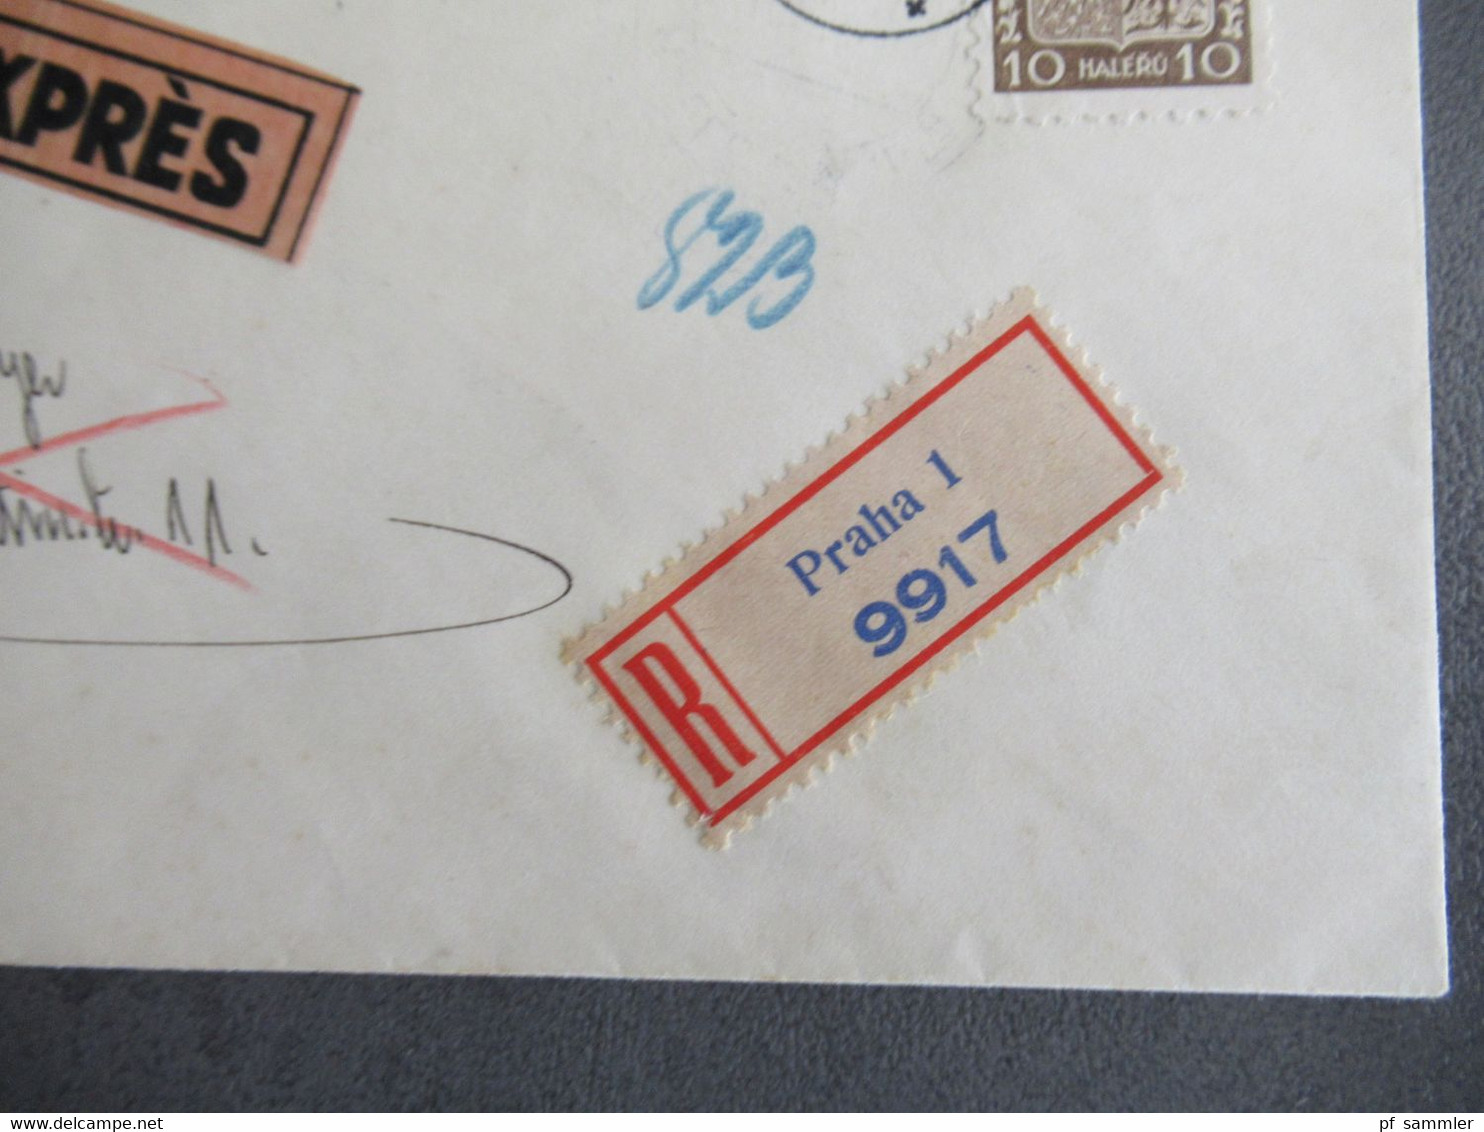 Böhmen Und Mähren 16.8.1939 Früher Beleg MiF Mit CSSR Marke Einschreiben Expres Ank. Stempel Halle Fernsprechamt - Storia Postale